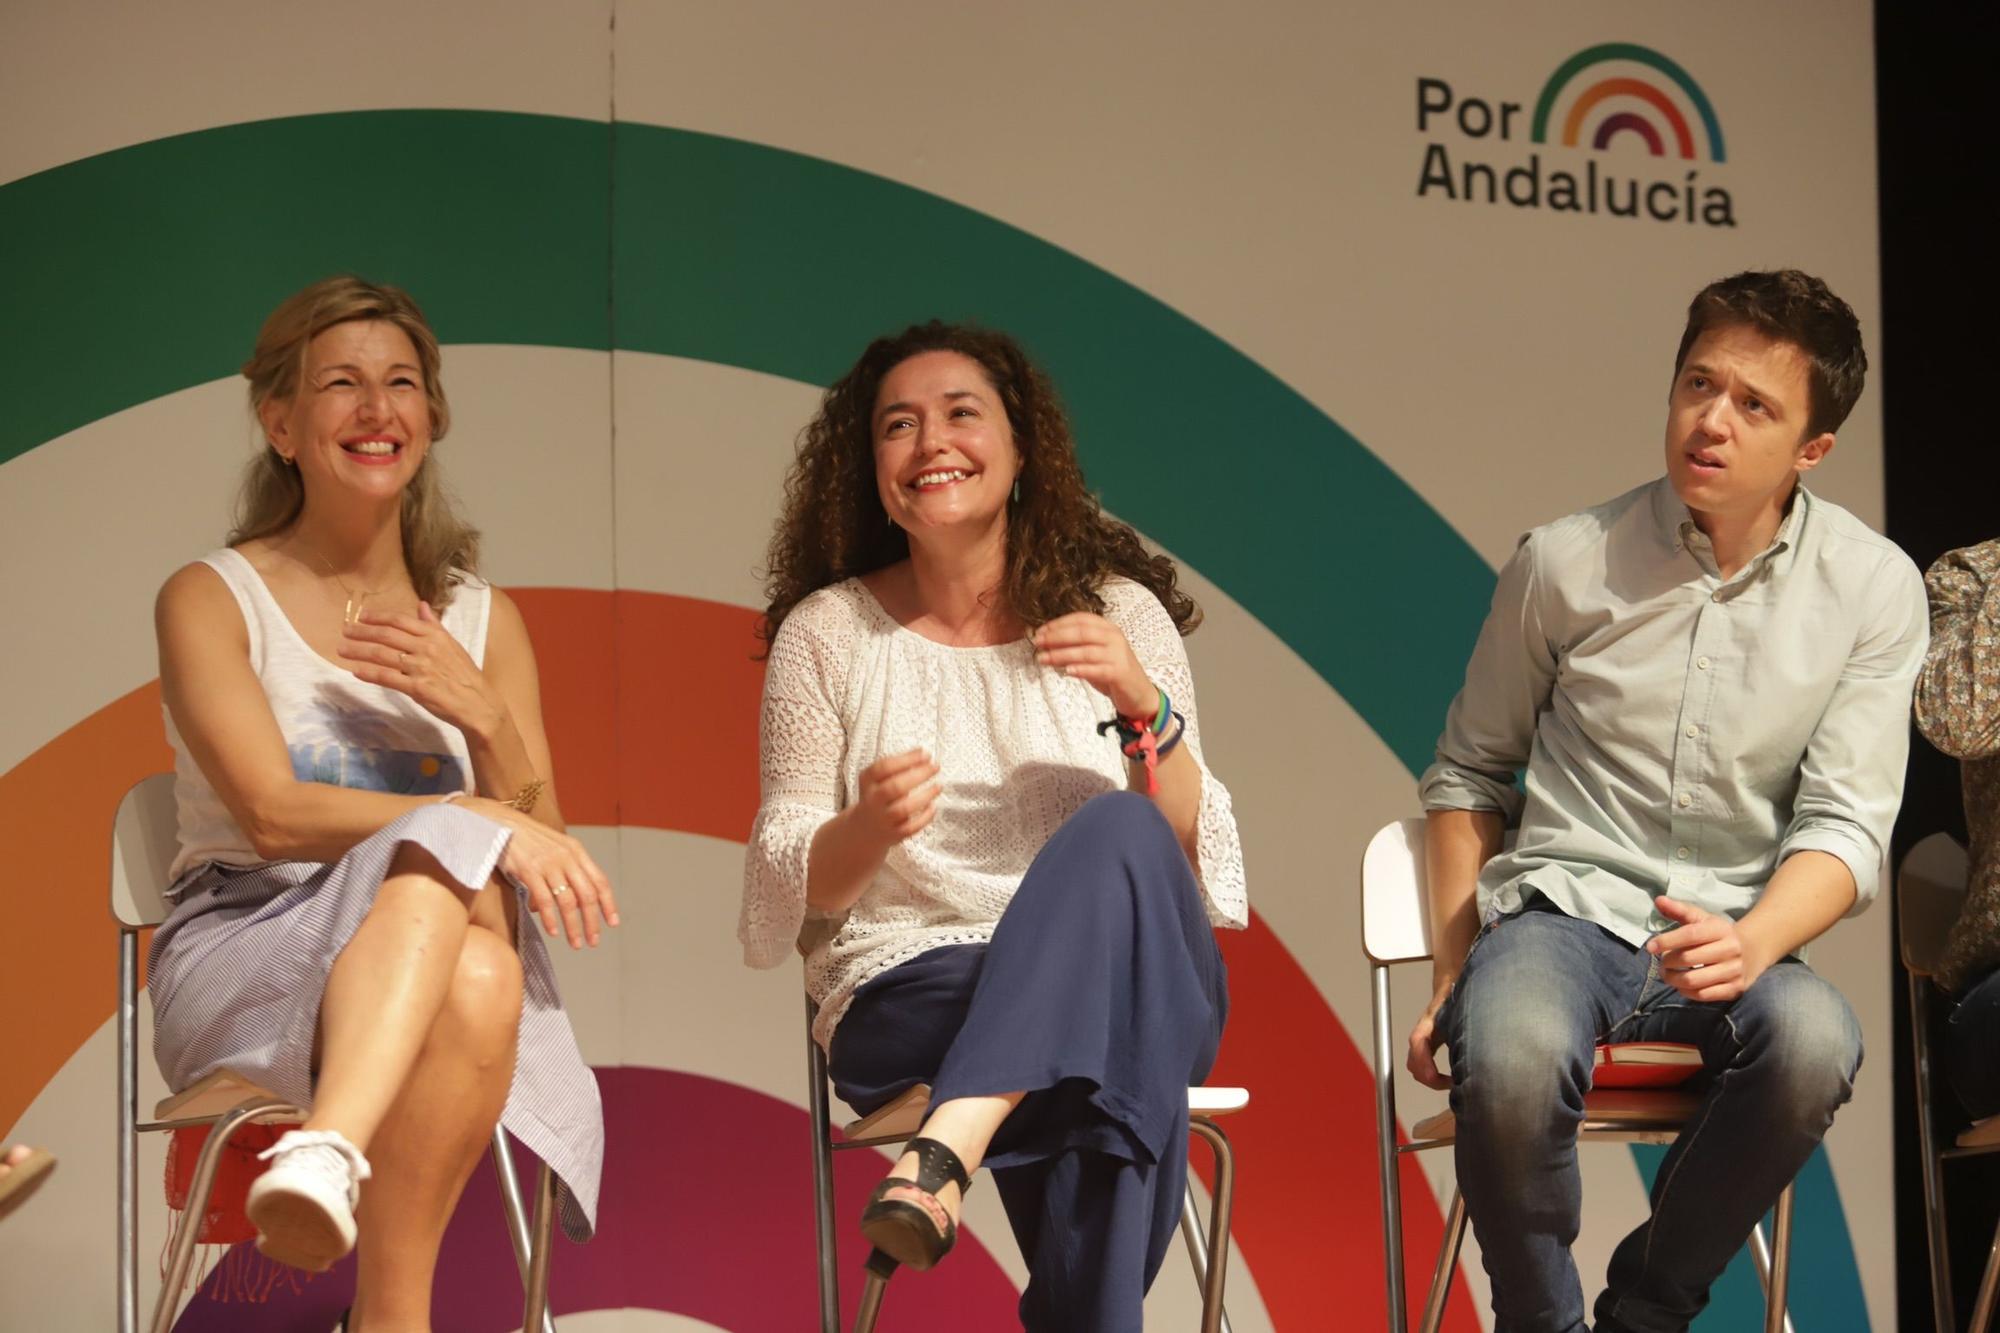 Elecciones andaluzas | Mitin de Por Andalucía con Yolanda Díaz en el Palacio de Ferias